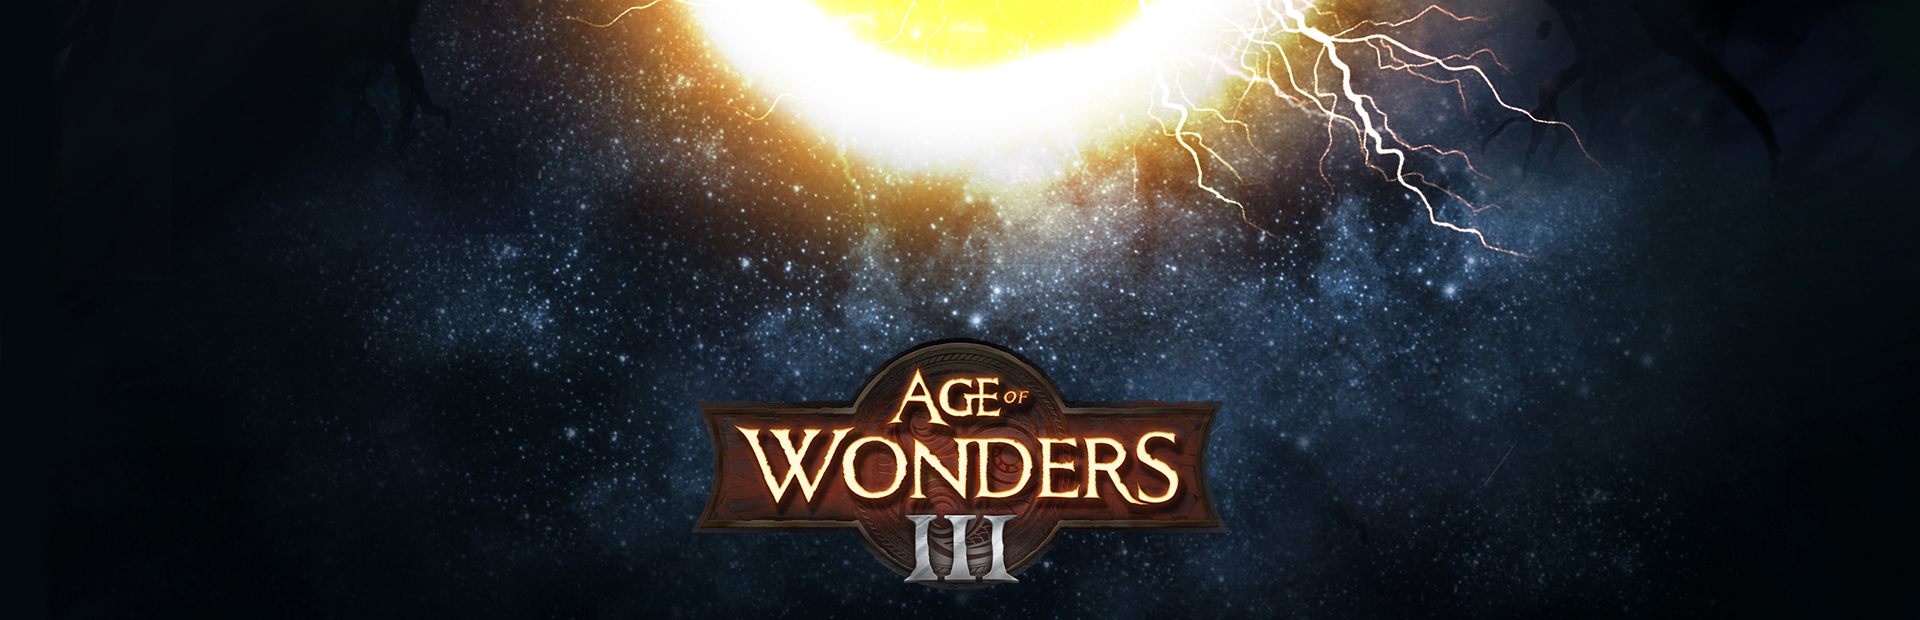 دانلود بازی Age of Wonders III برای PC | گیمباتو